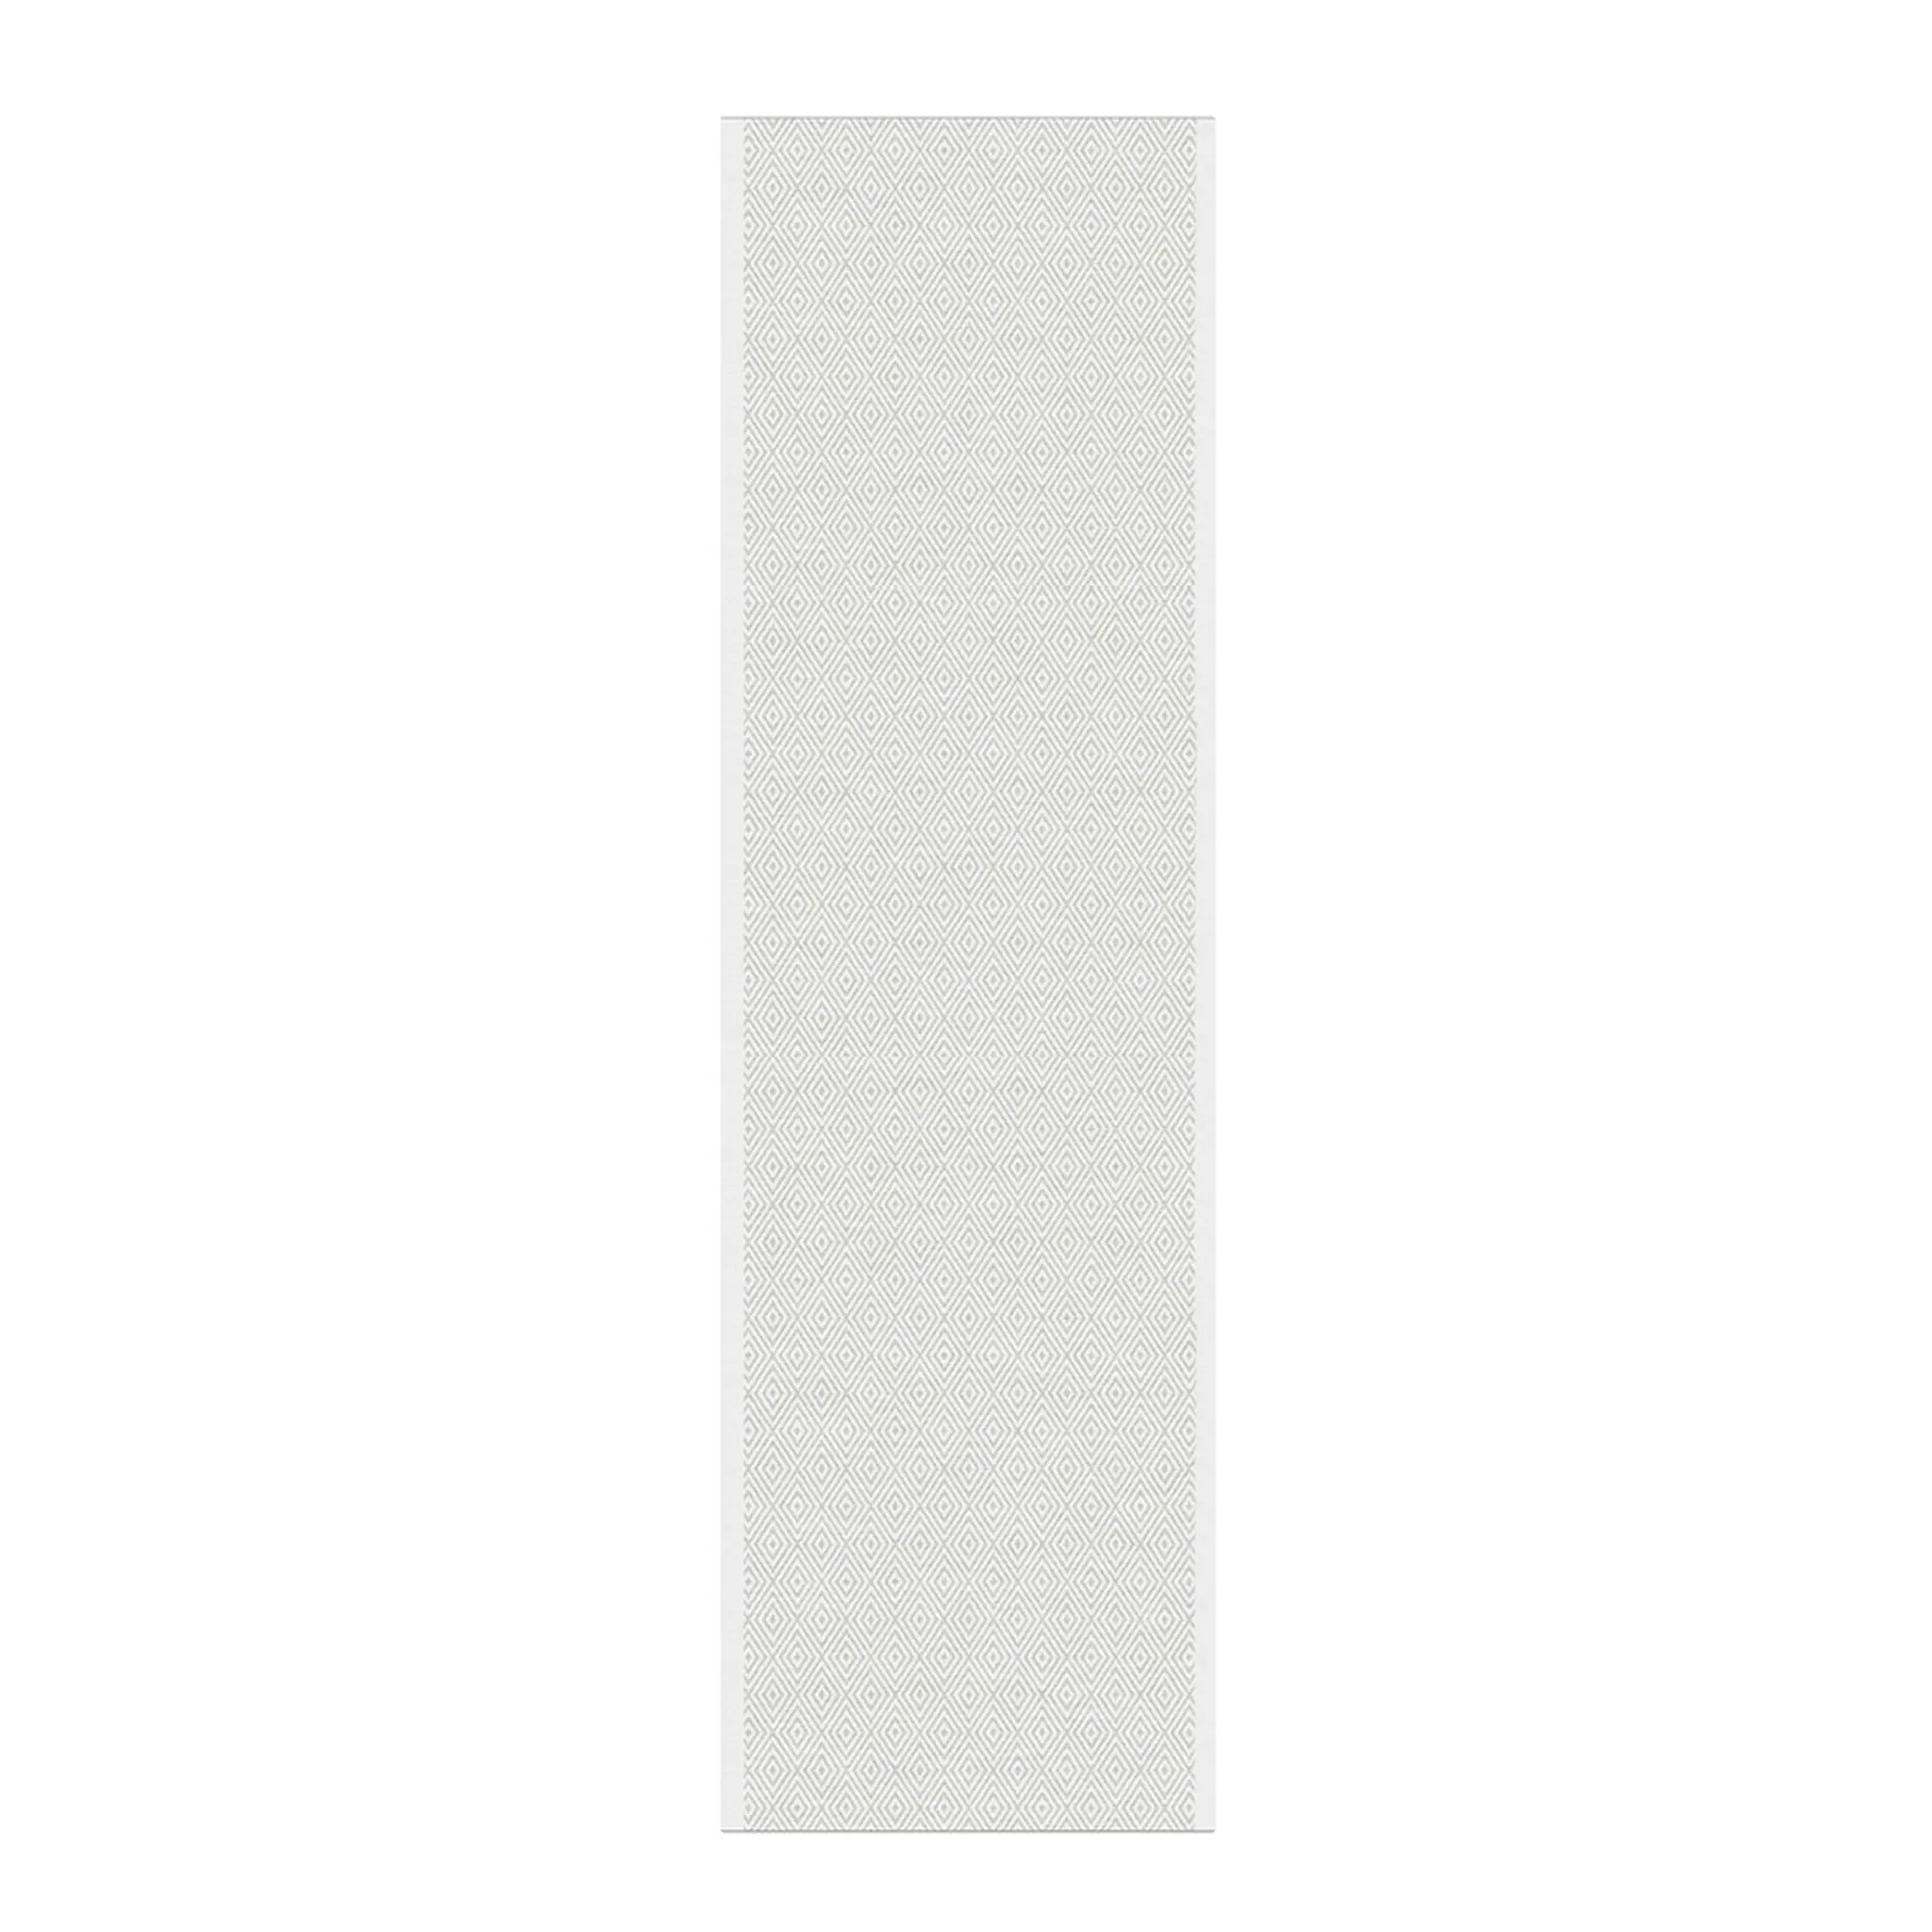 Ekelund Gåsöga bordløper 35x120 cm beige